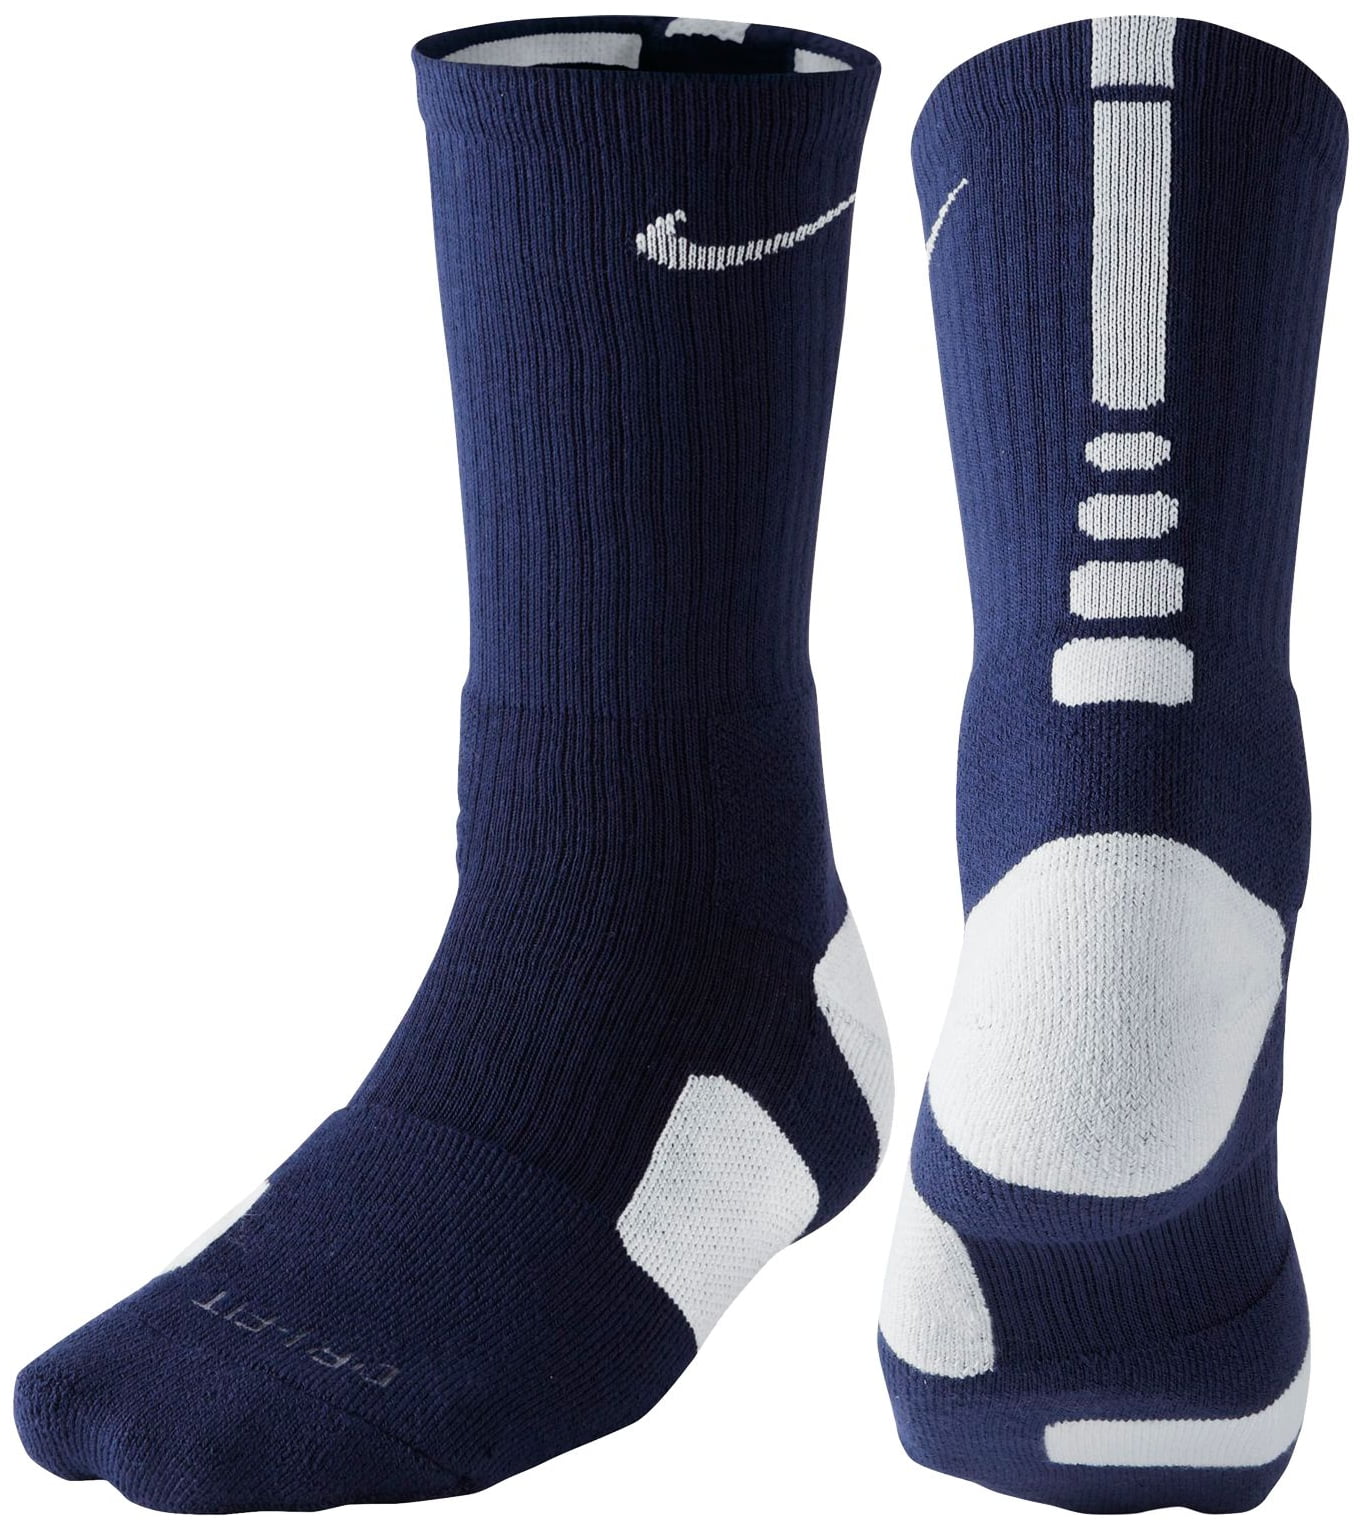 nike dri-fit crew socks (navy, xl) - Walmart.com